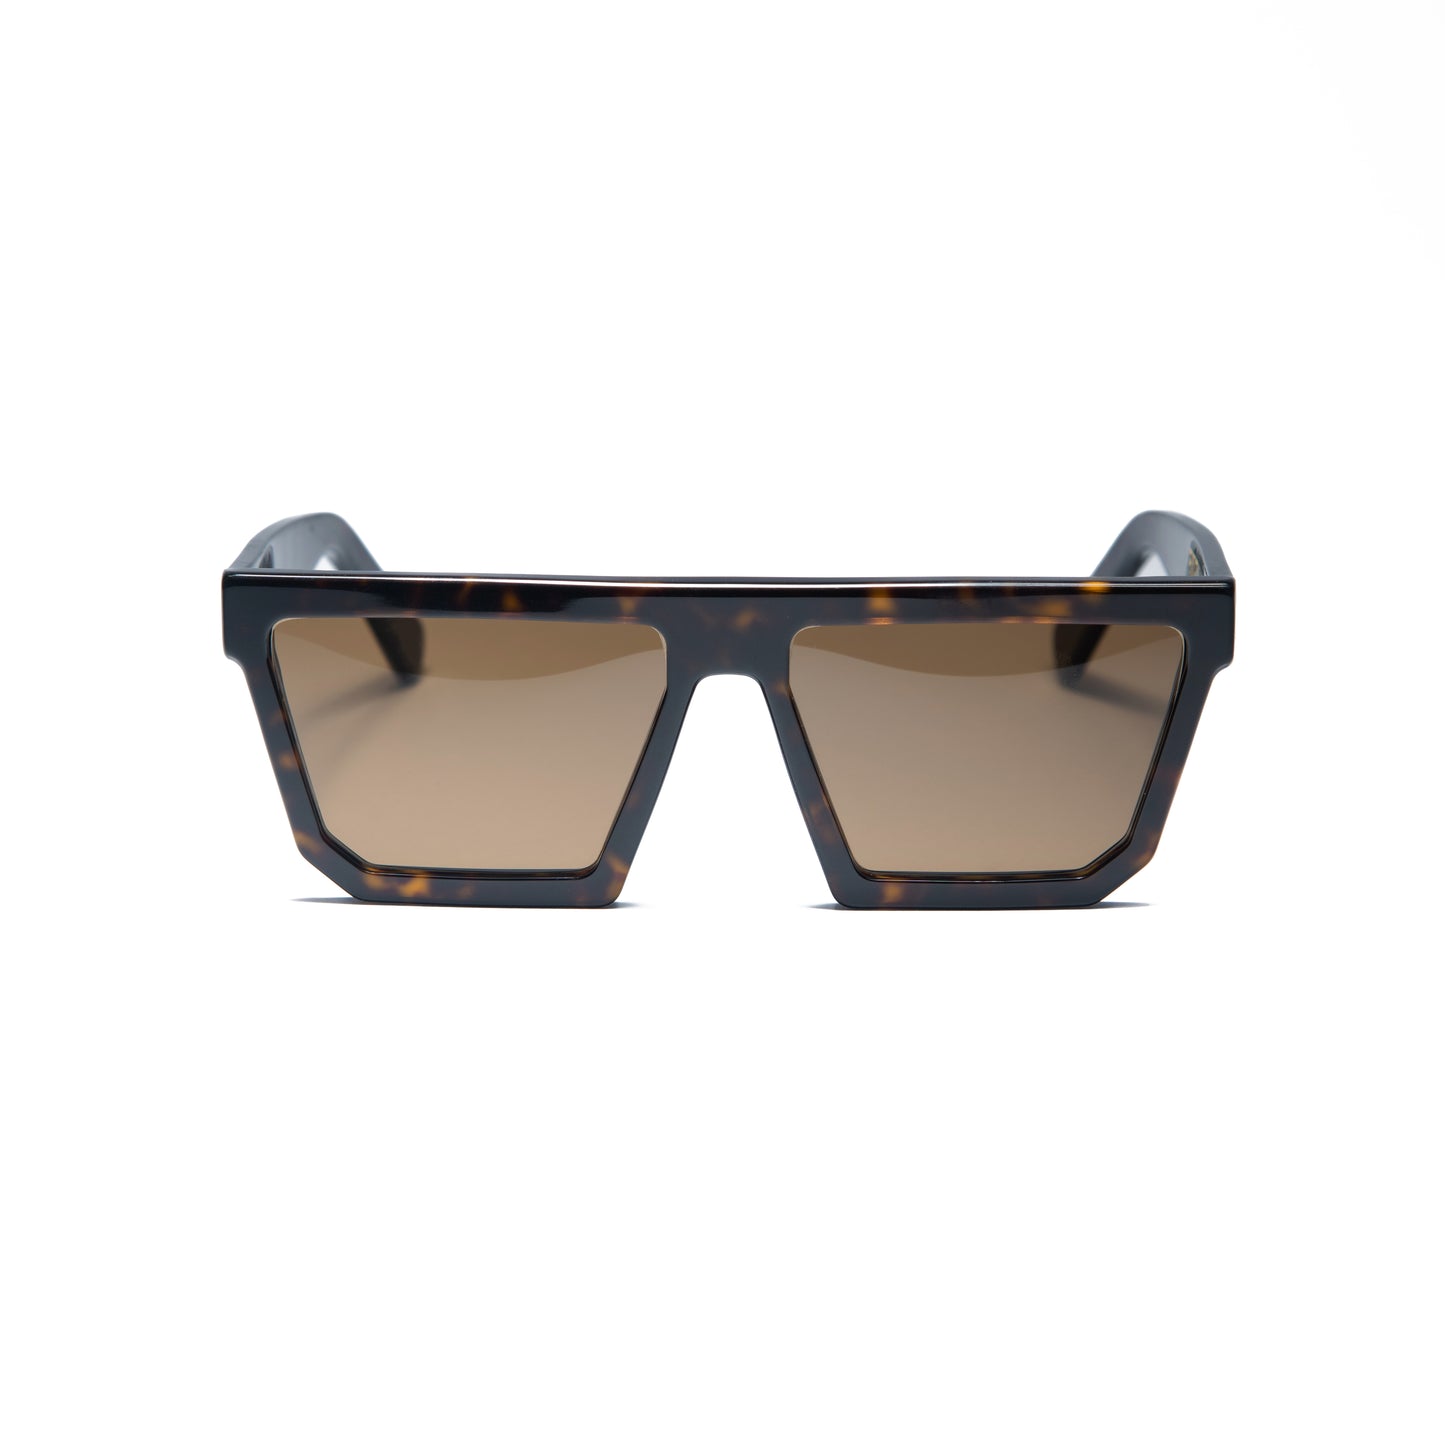 " 5OM " 2011 Sunglasses Tortoise Marrone